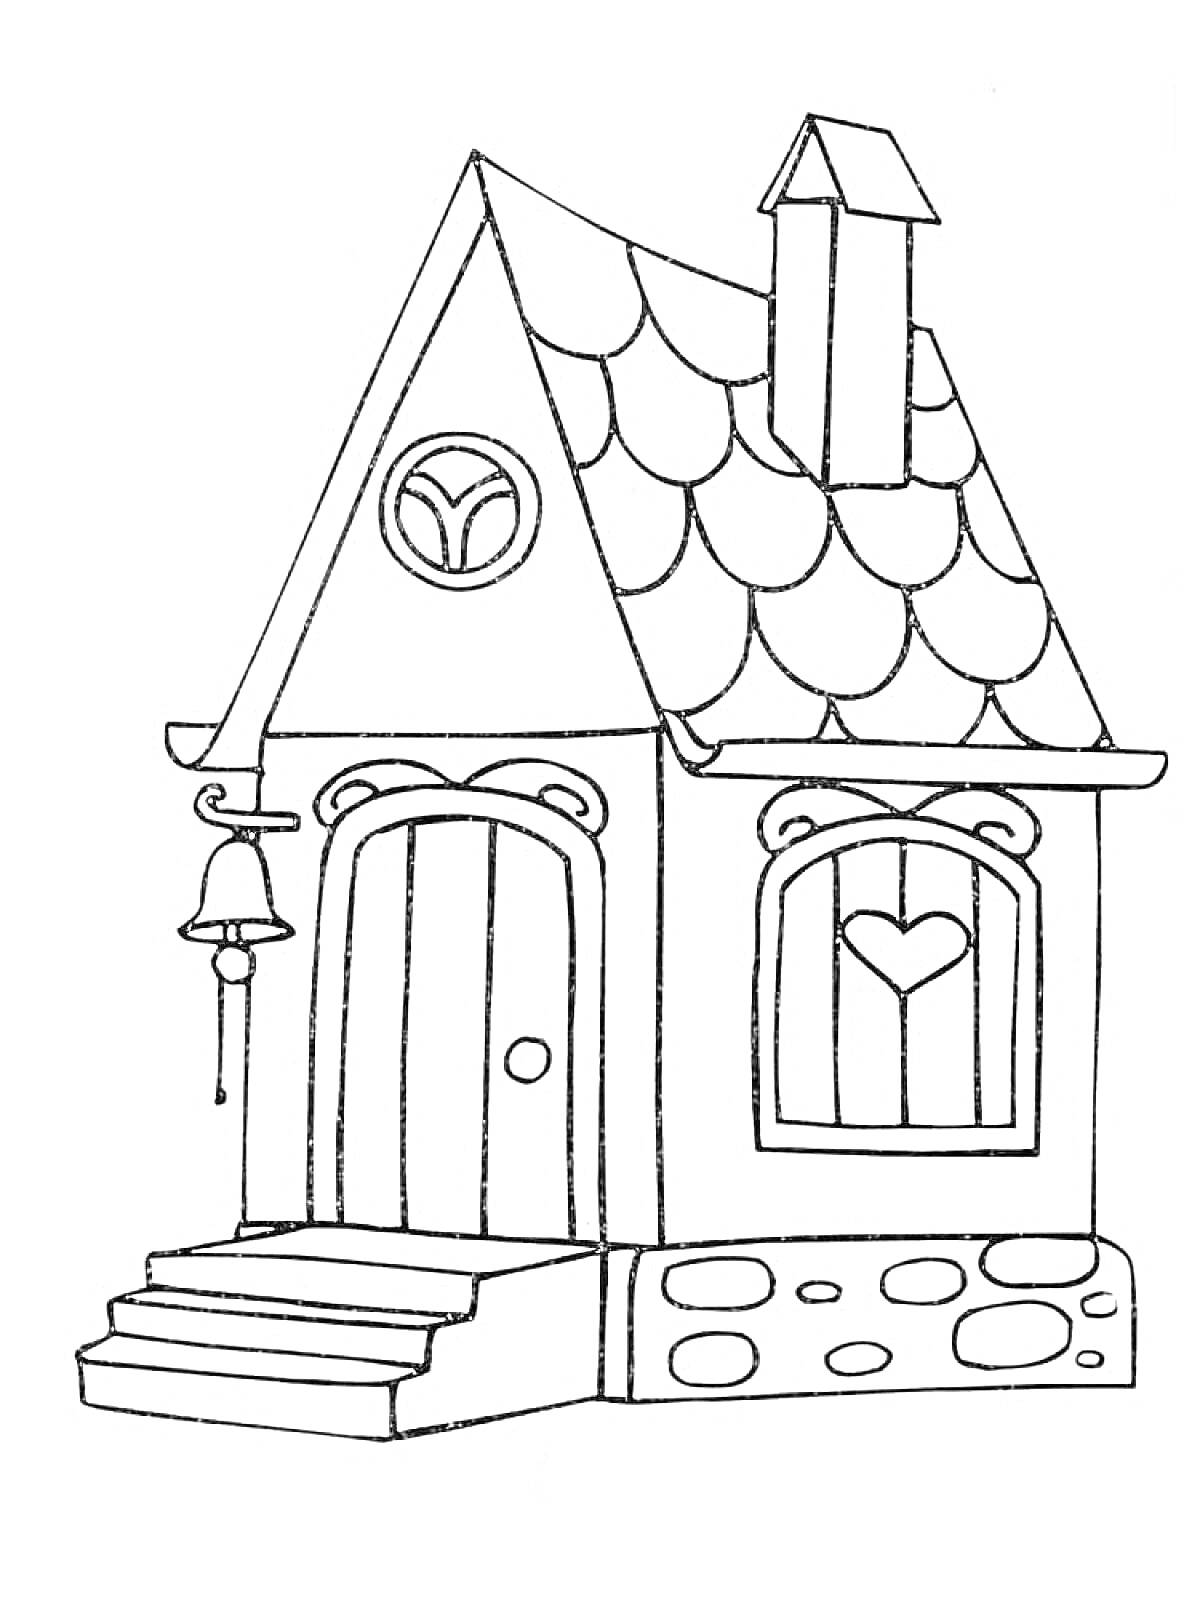 Раскраска Домик с арочными дверьми и окнами, окружённый каменным фундаментом, с колоколом и лестницей